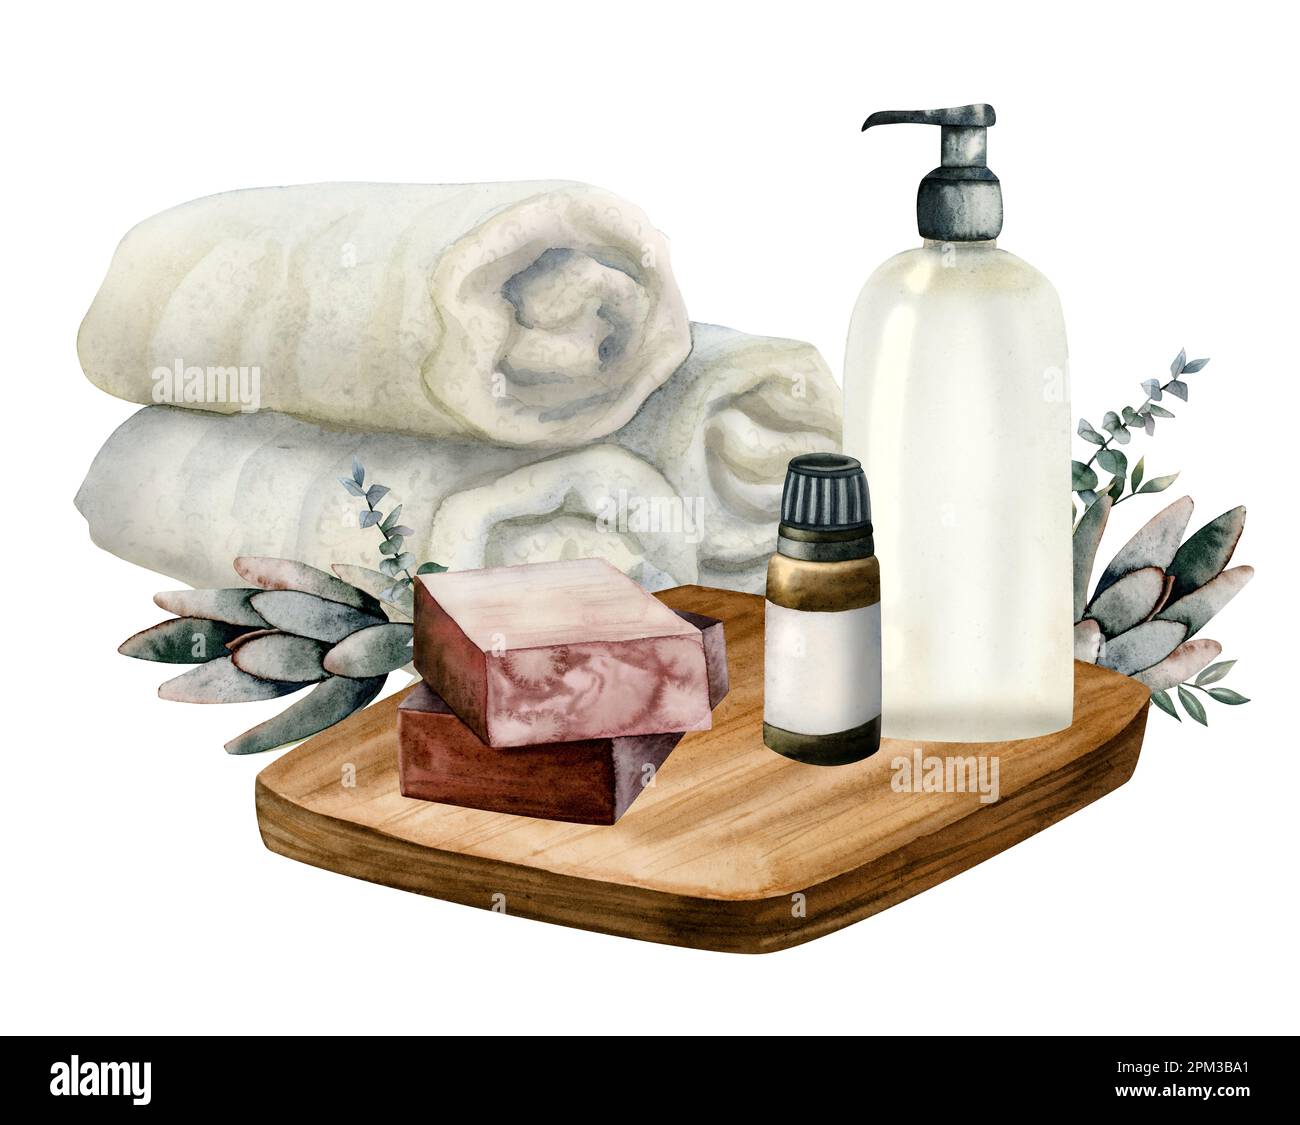 Set relax acquerello con asciugamani arrotolati, bottiglia di olio essenziale, dispenser doccia gel, saponette al marrone decorato con rami di eucalipto Foto Stock